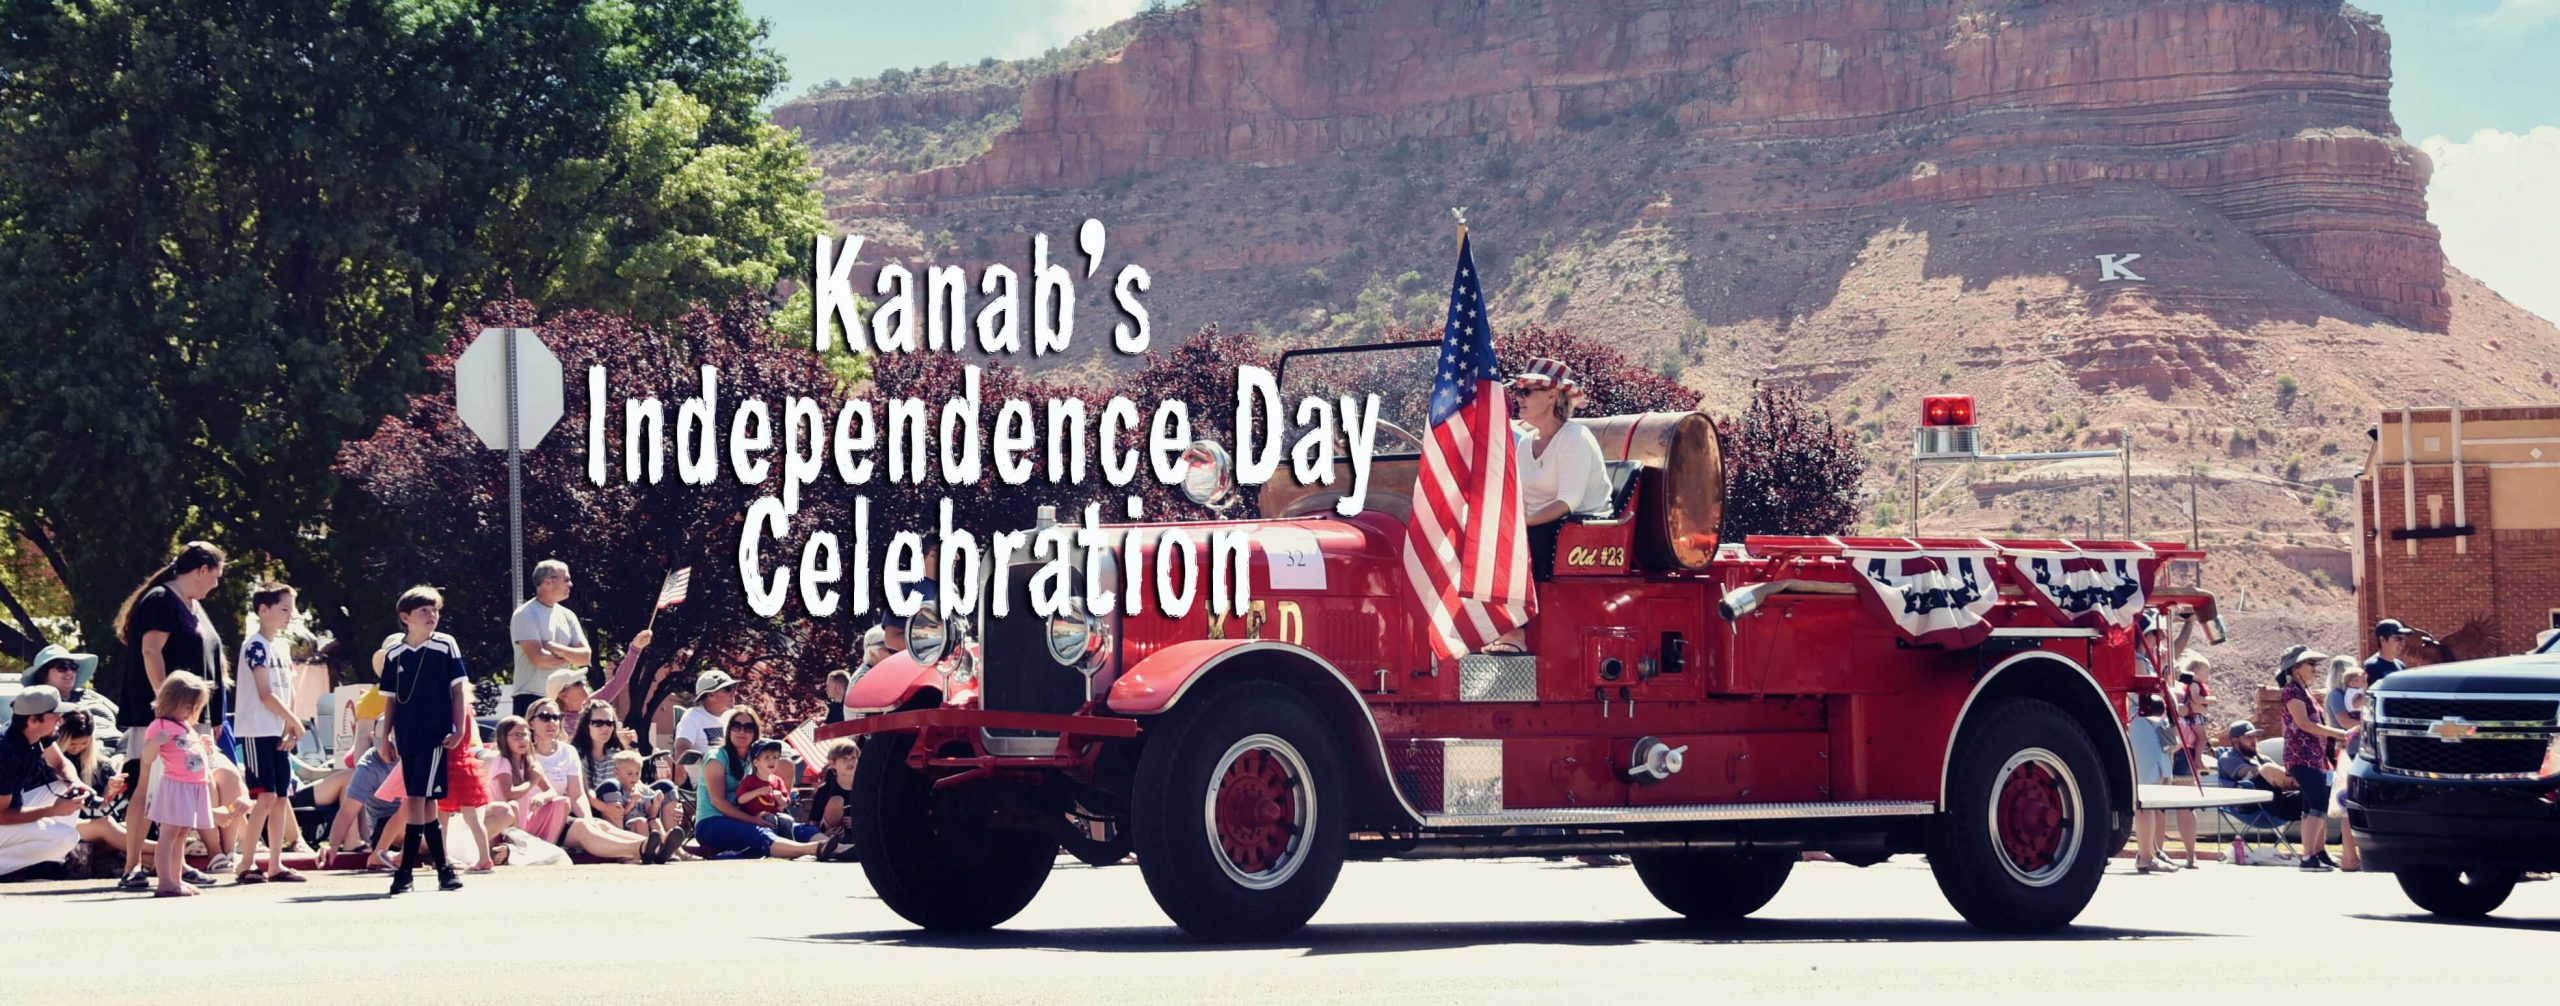 Kanab's Independence Day Celebration Visit Southern Utah